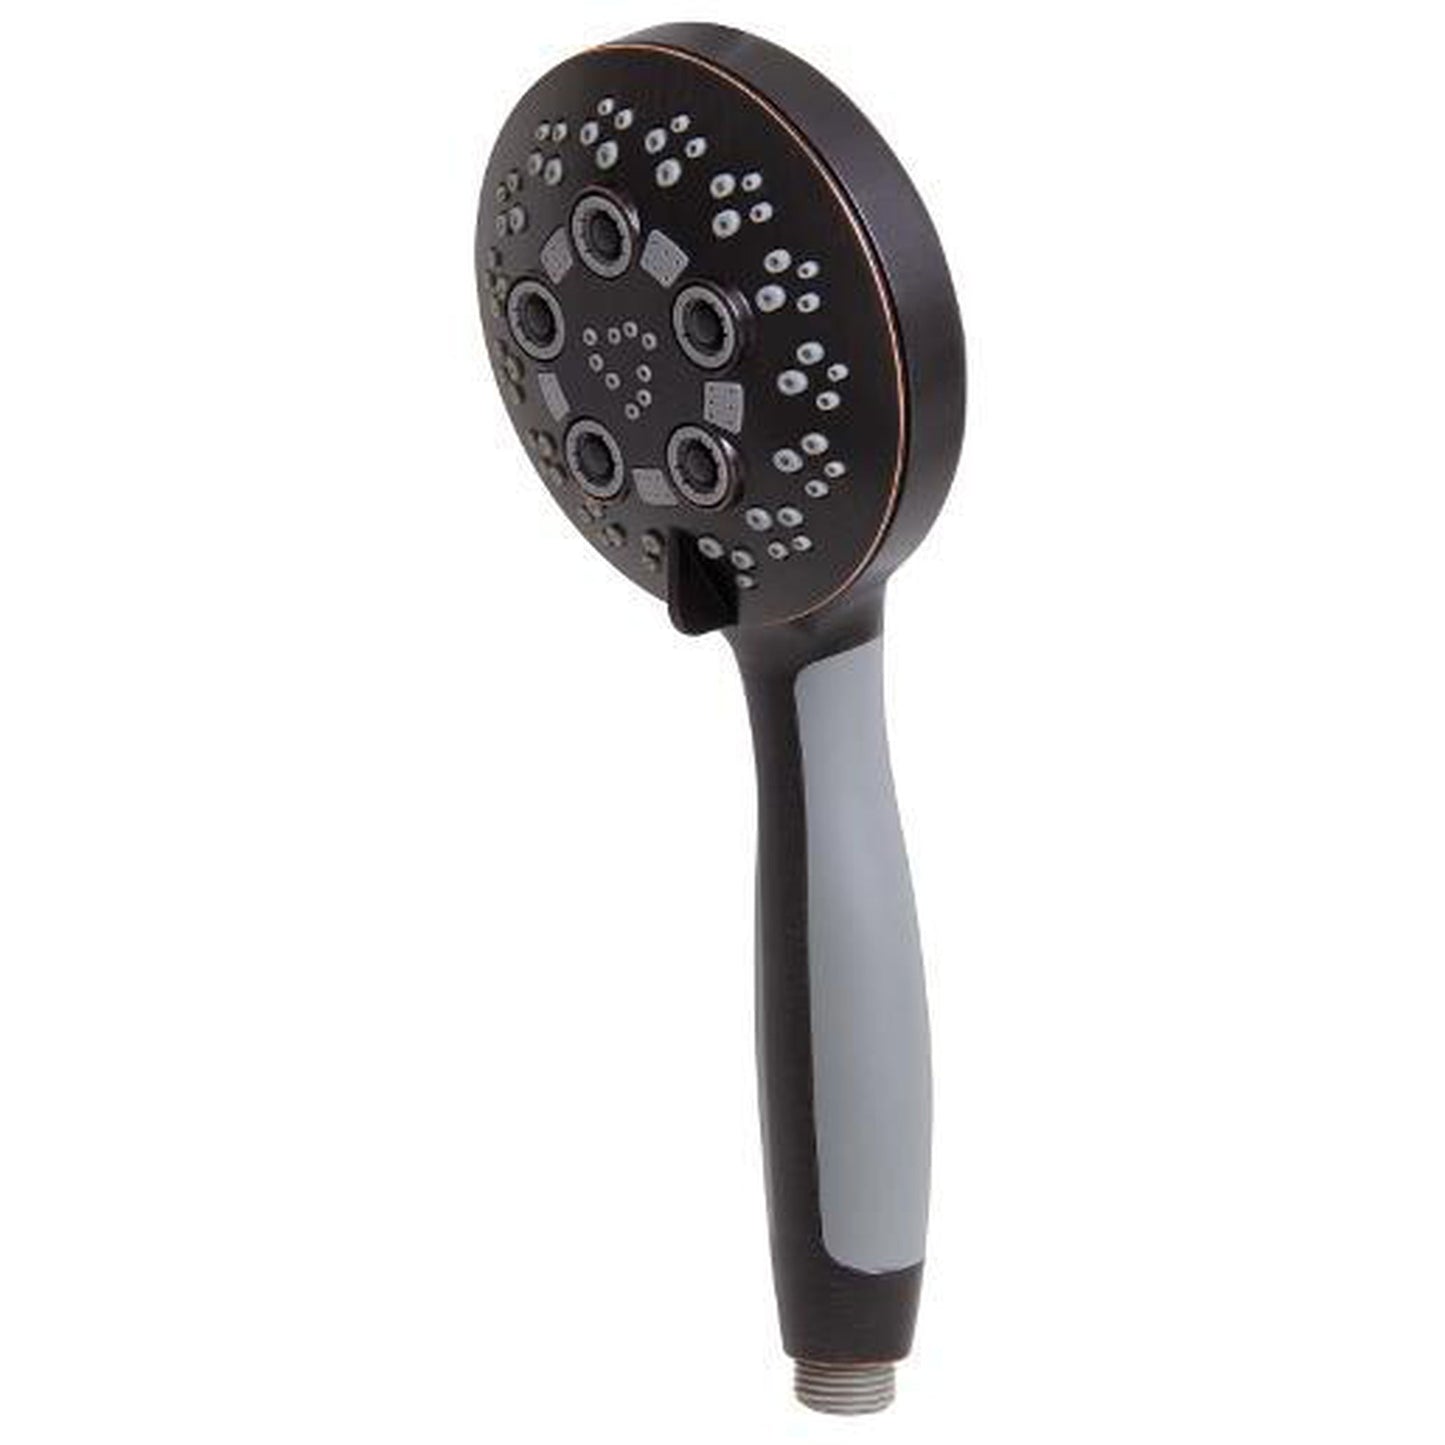 Speakman Rio 2.5 GPM 5-Spray Pattern Handheld Oil Rubbed Bronze Shower Head